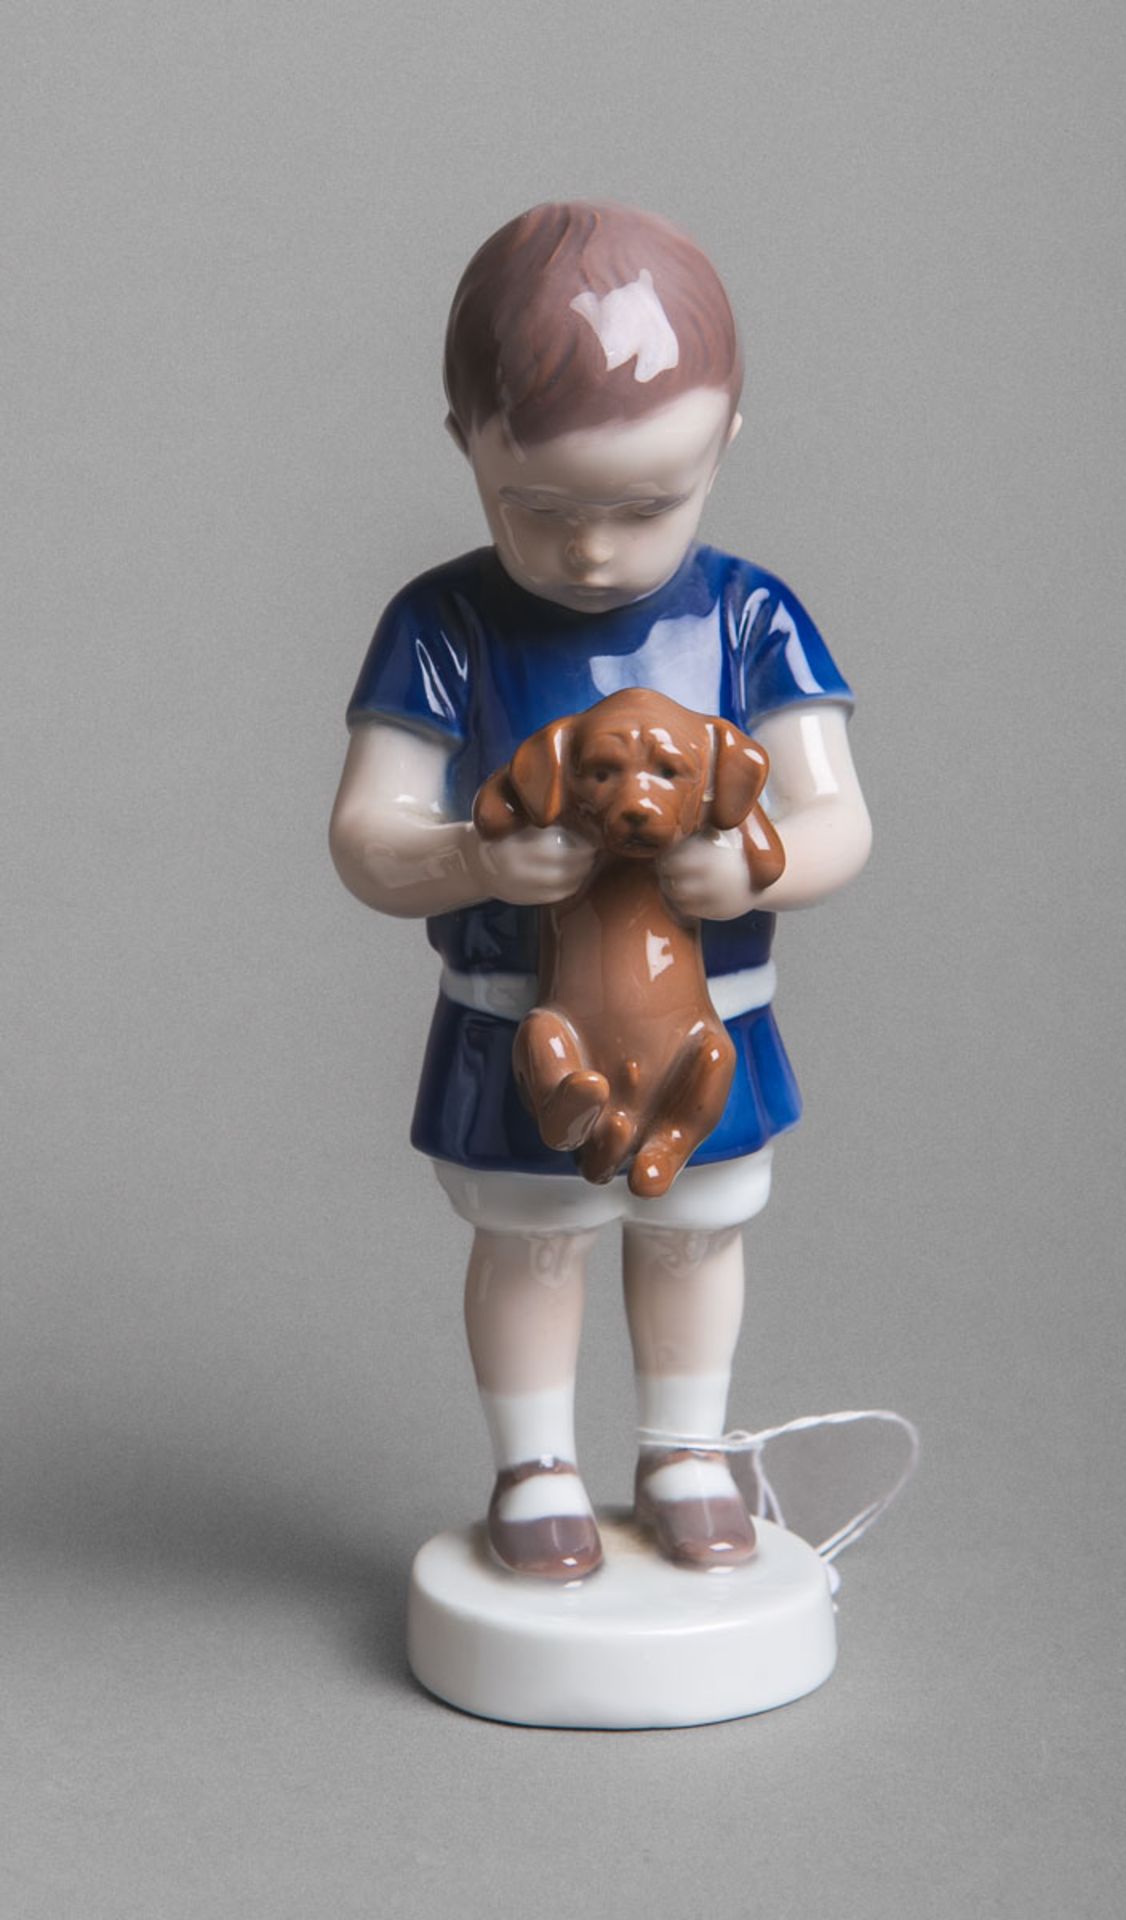 Porzellanfigur "Junge mit Hund" (B u. G, Copenhagen)